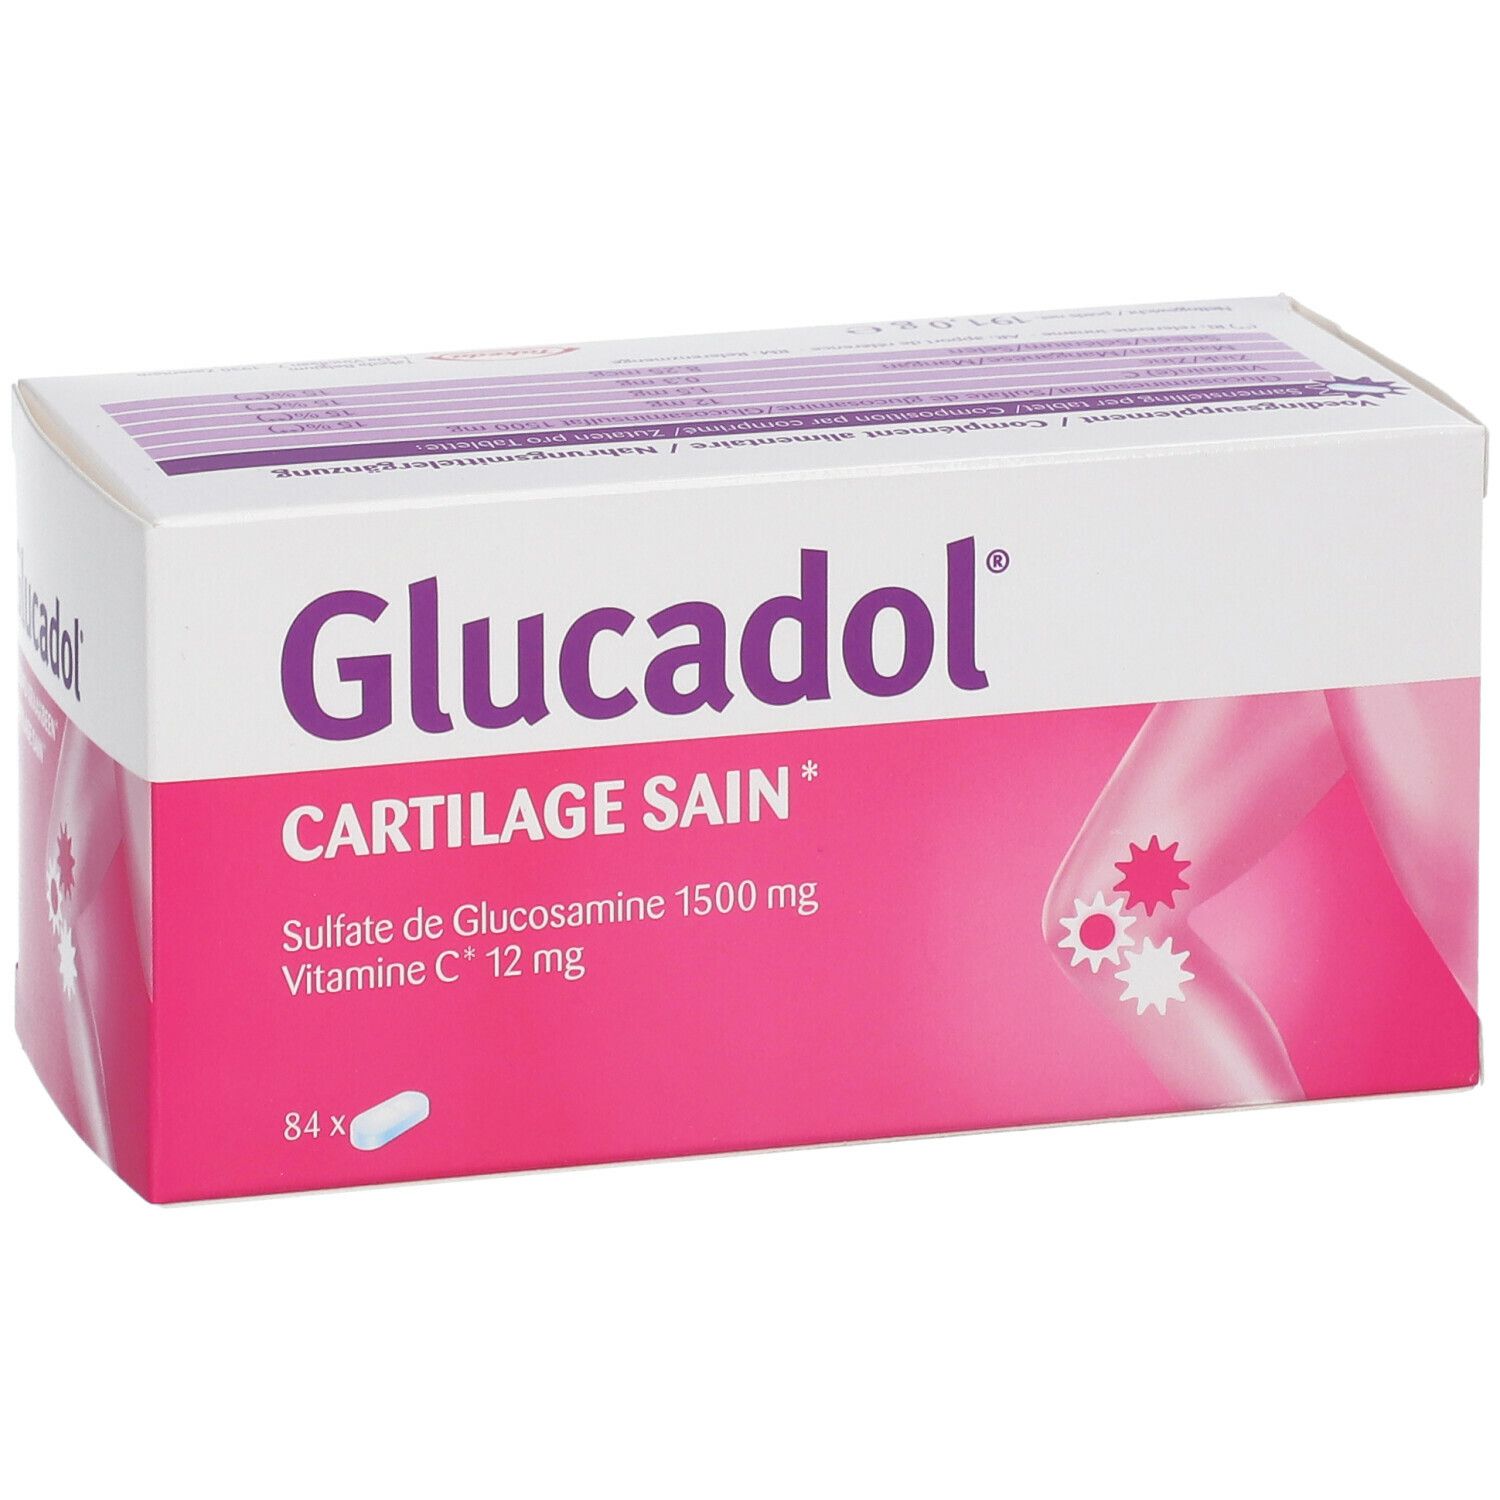 Glucadol® Cartilage sain 1500 mg